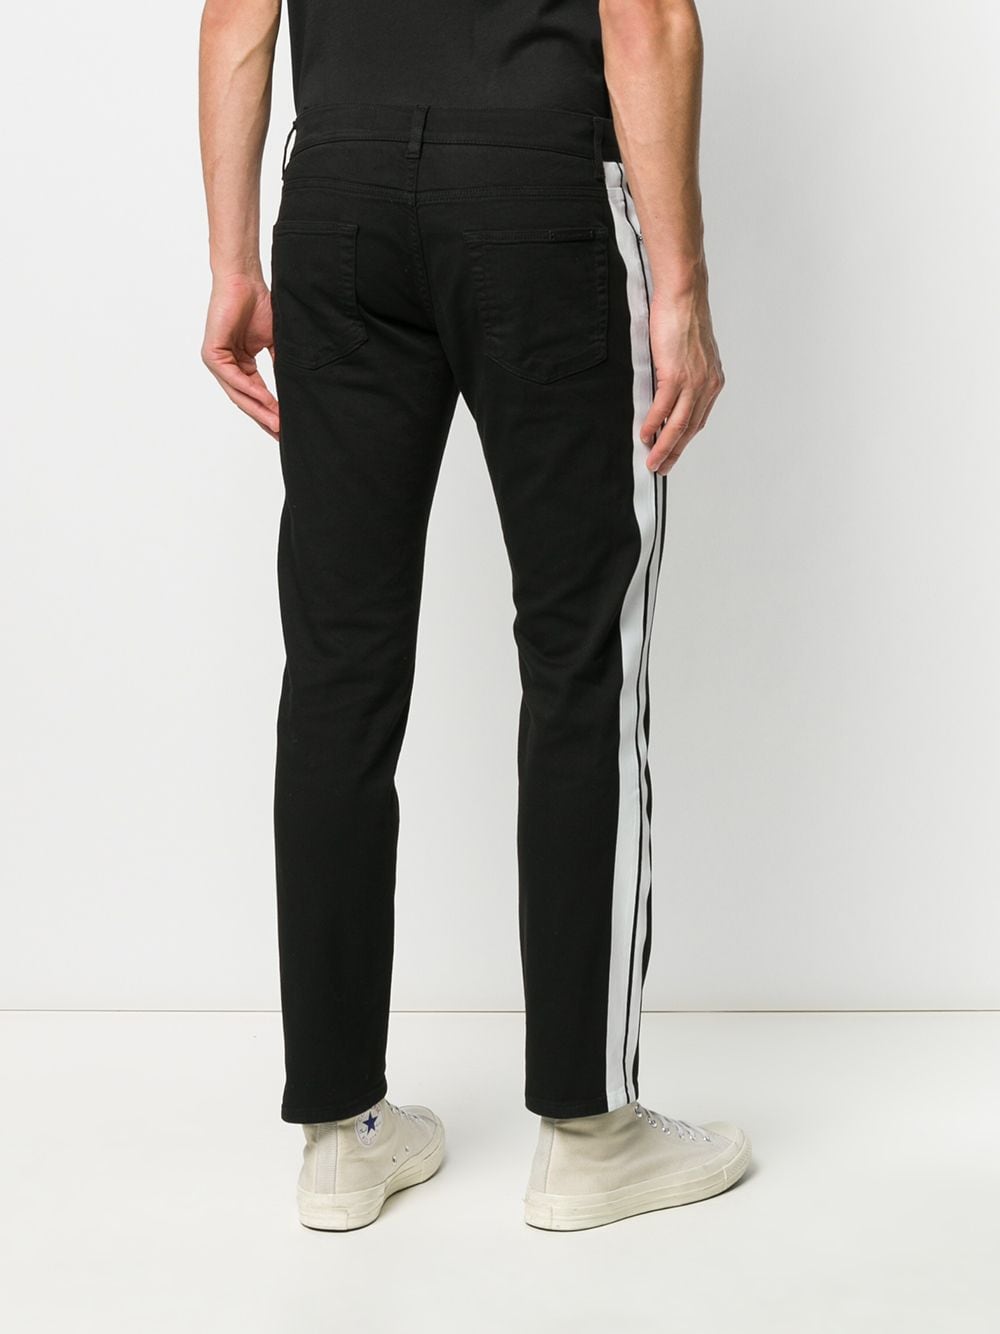 фото Dolce & gabbana джинсы прямого кроя с лампасами